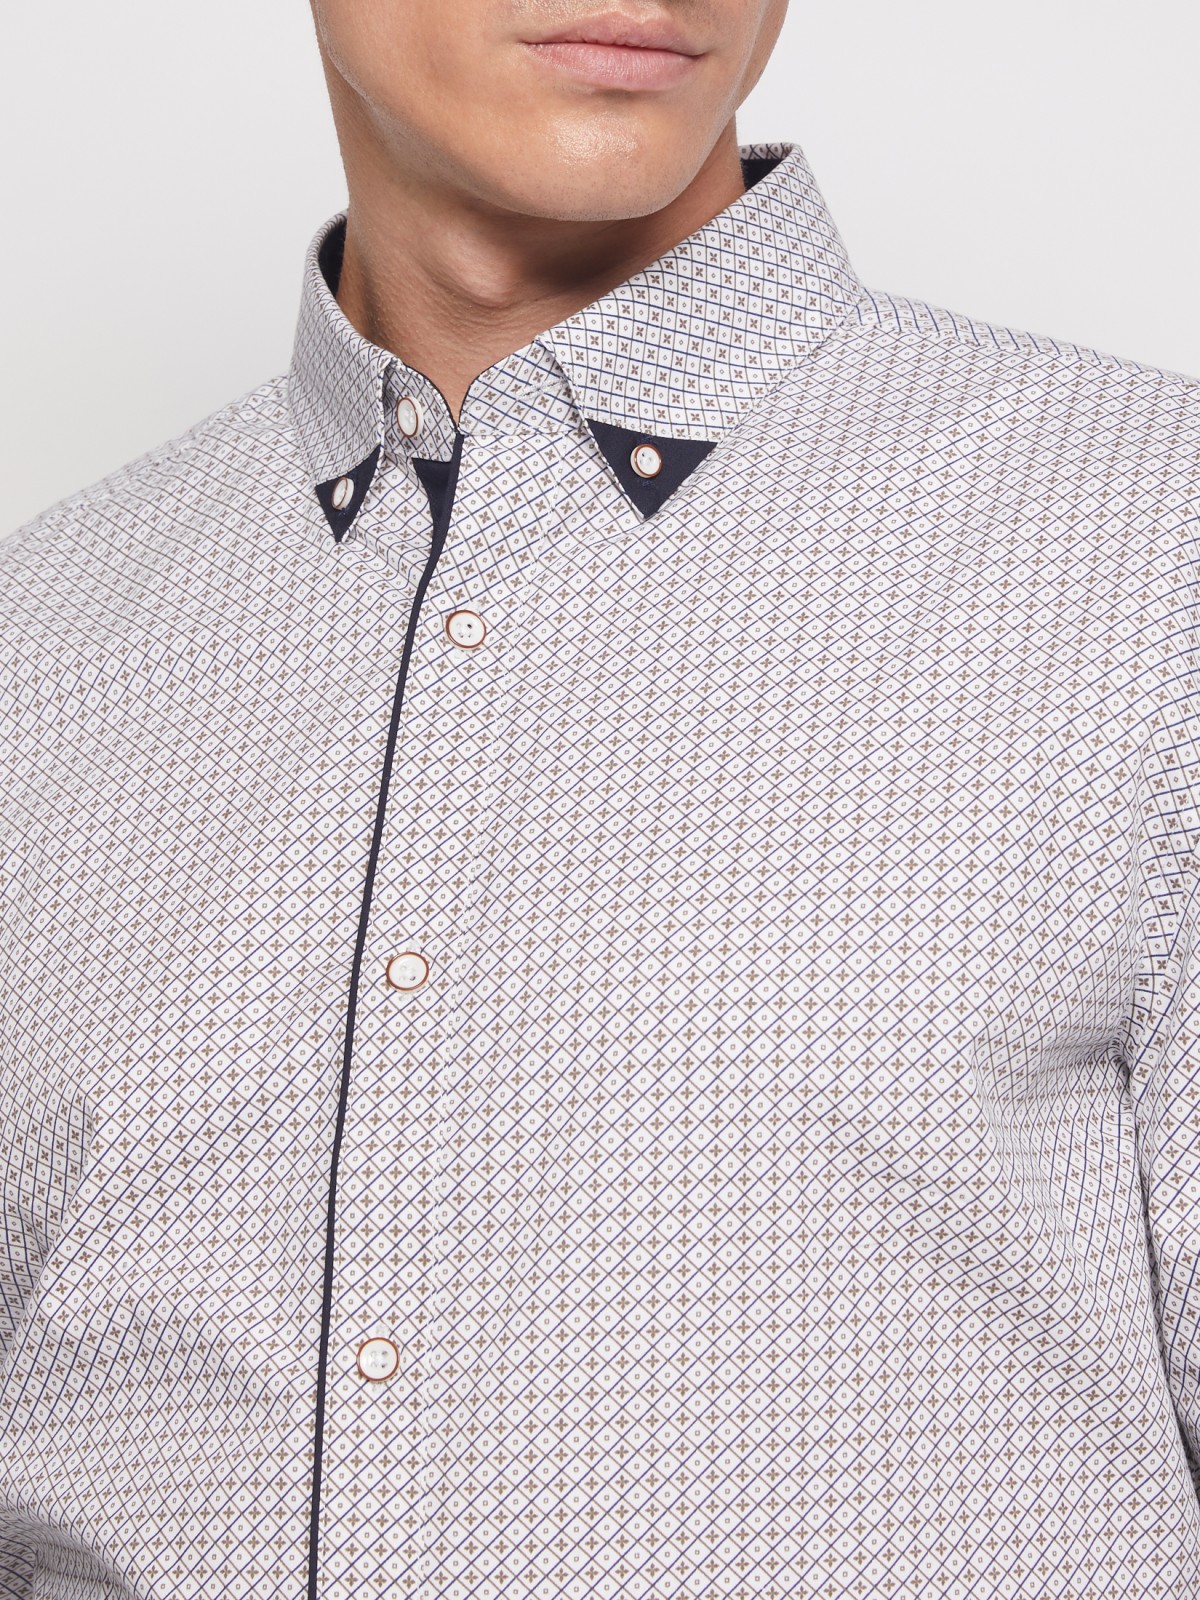 Хлопковая рубашка с мелким принтом zolla 011452159013, цвет белый, размер S - фото 5